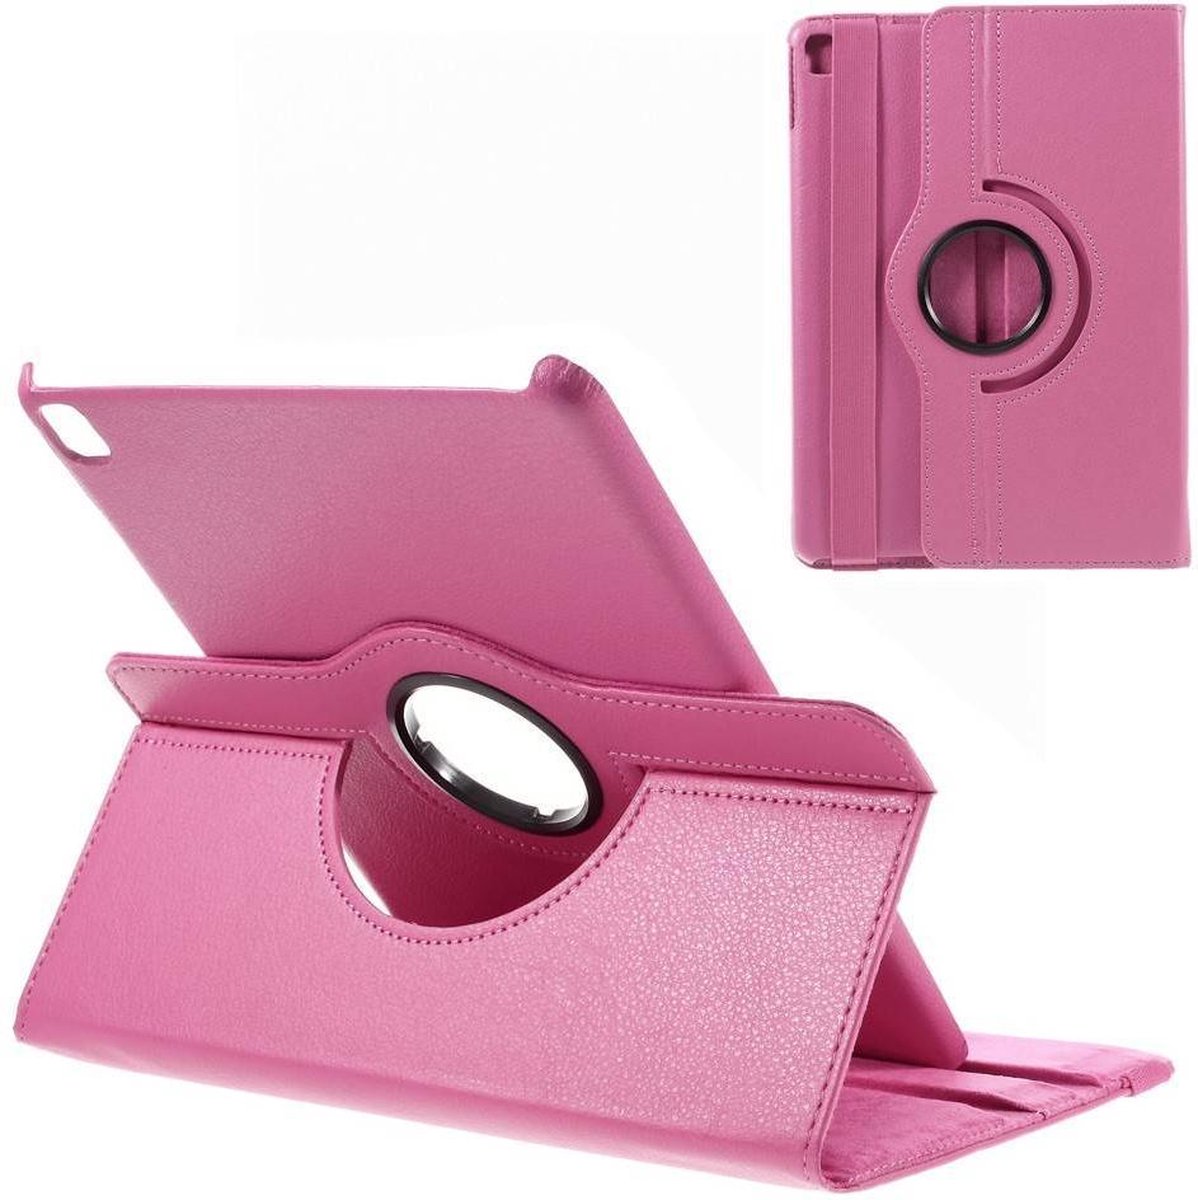 iPad Pro 9.7 hoes 360 graden roteerbaar Litchi Leder Licht-roze